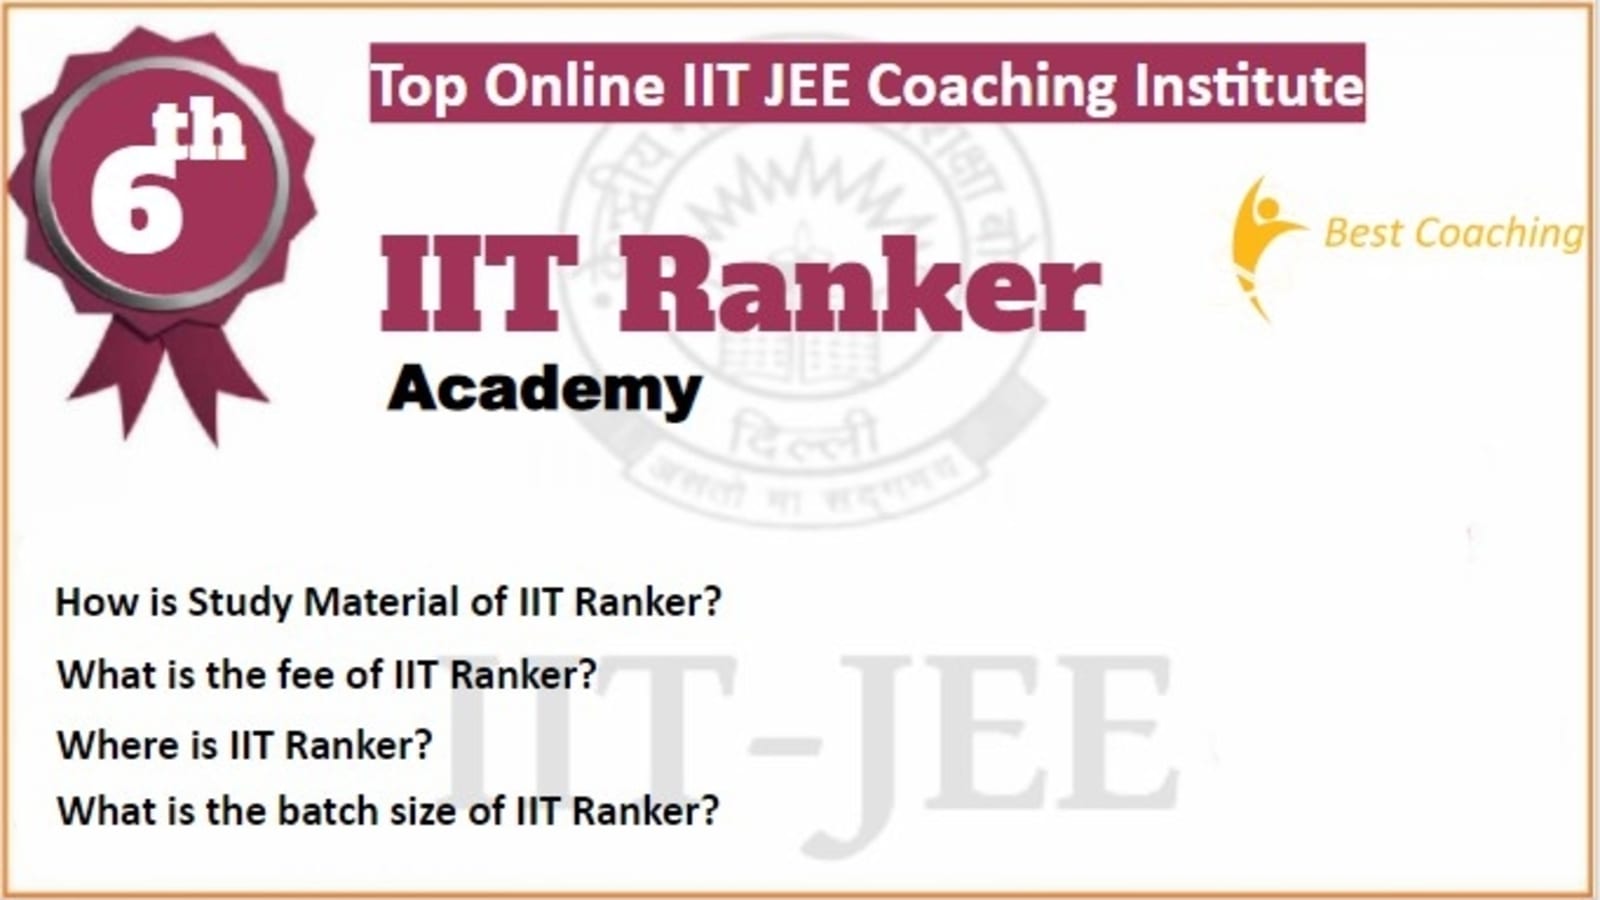 Rank 6 Best Online IIT JEE Coaching